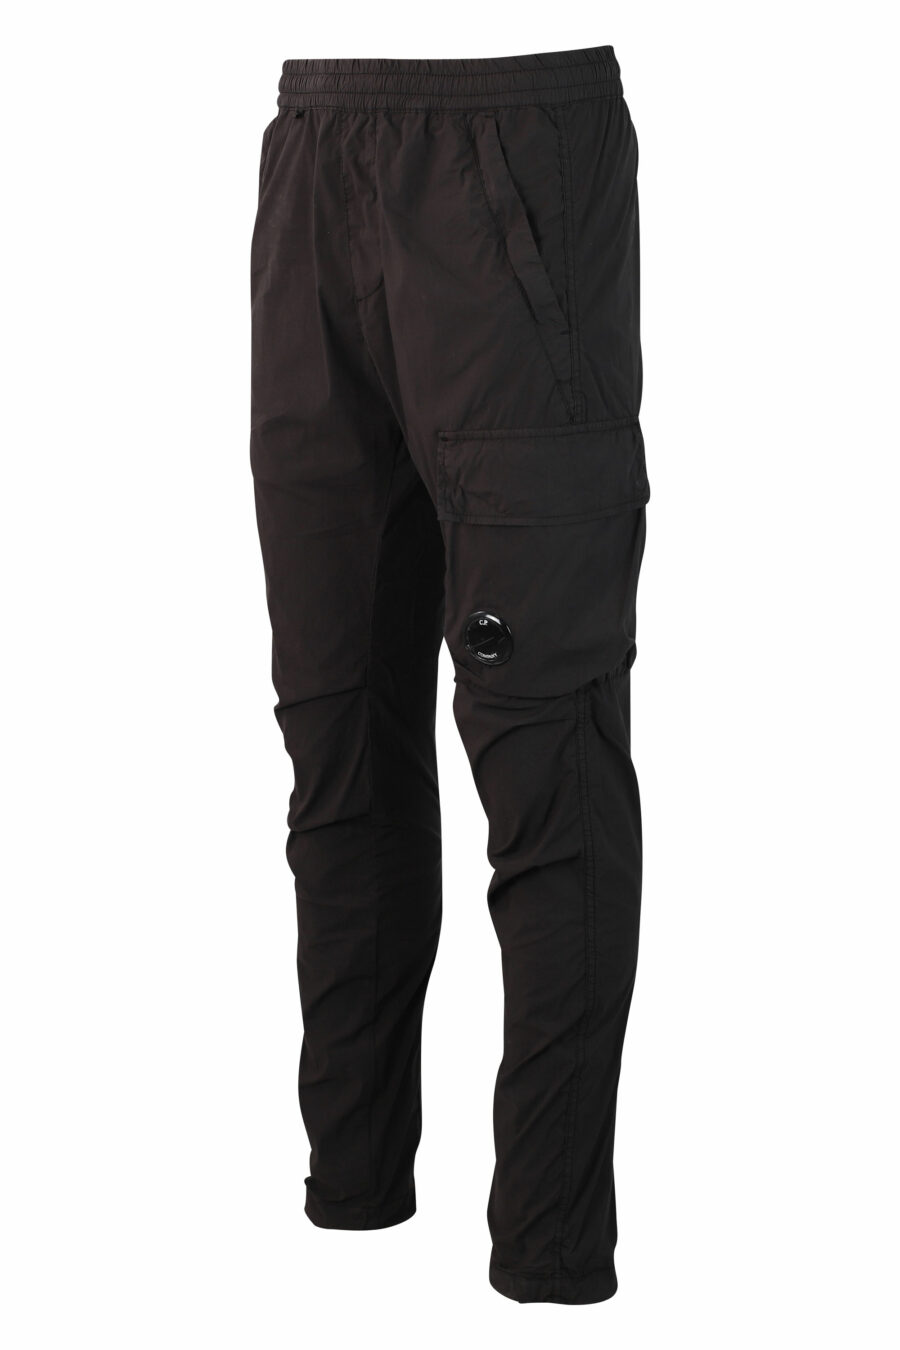 Pantalón negro con minilogo circular lateral - IMG 9913